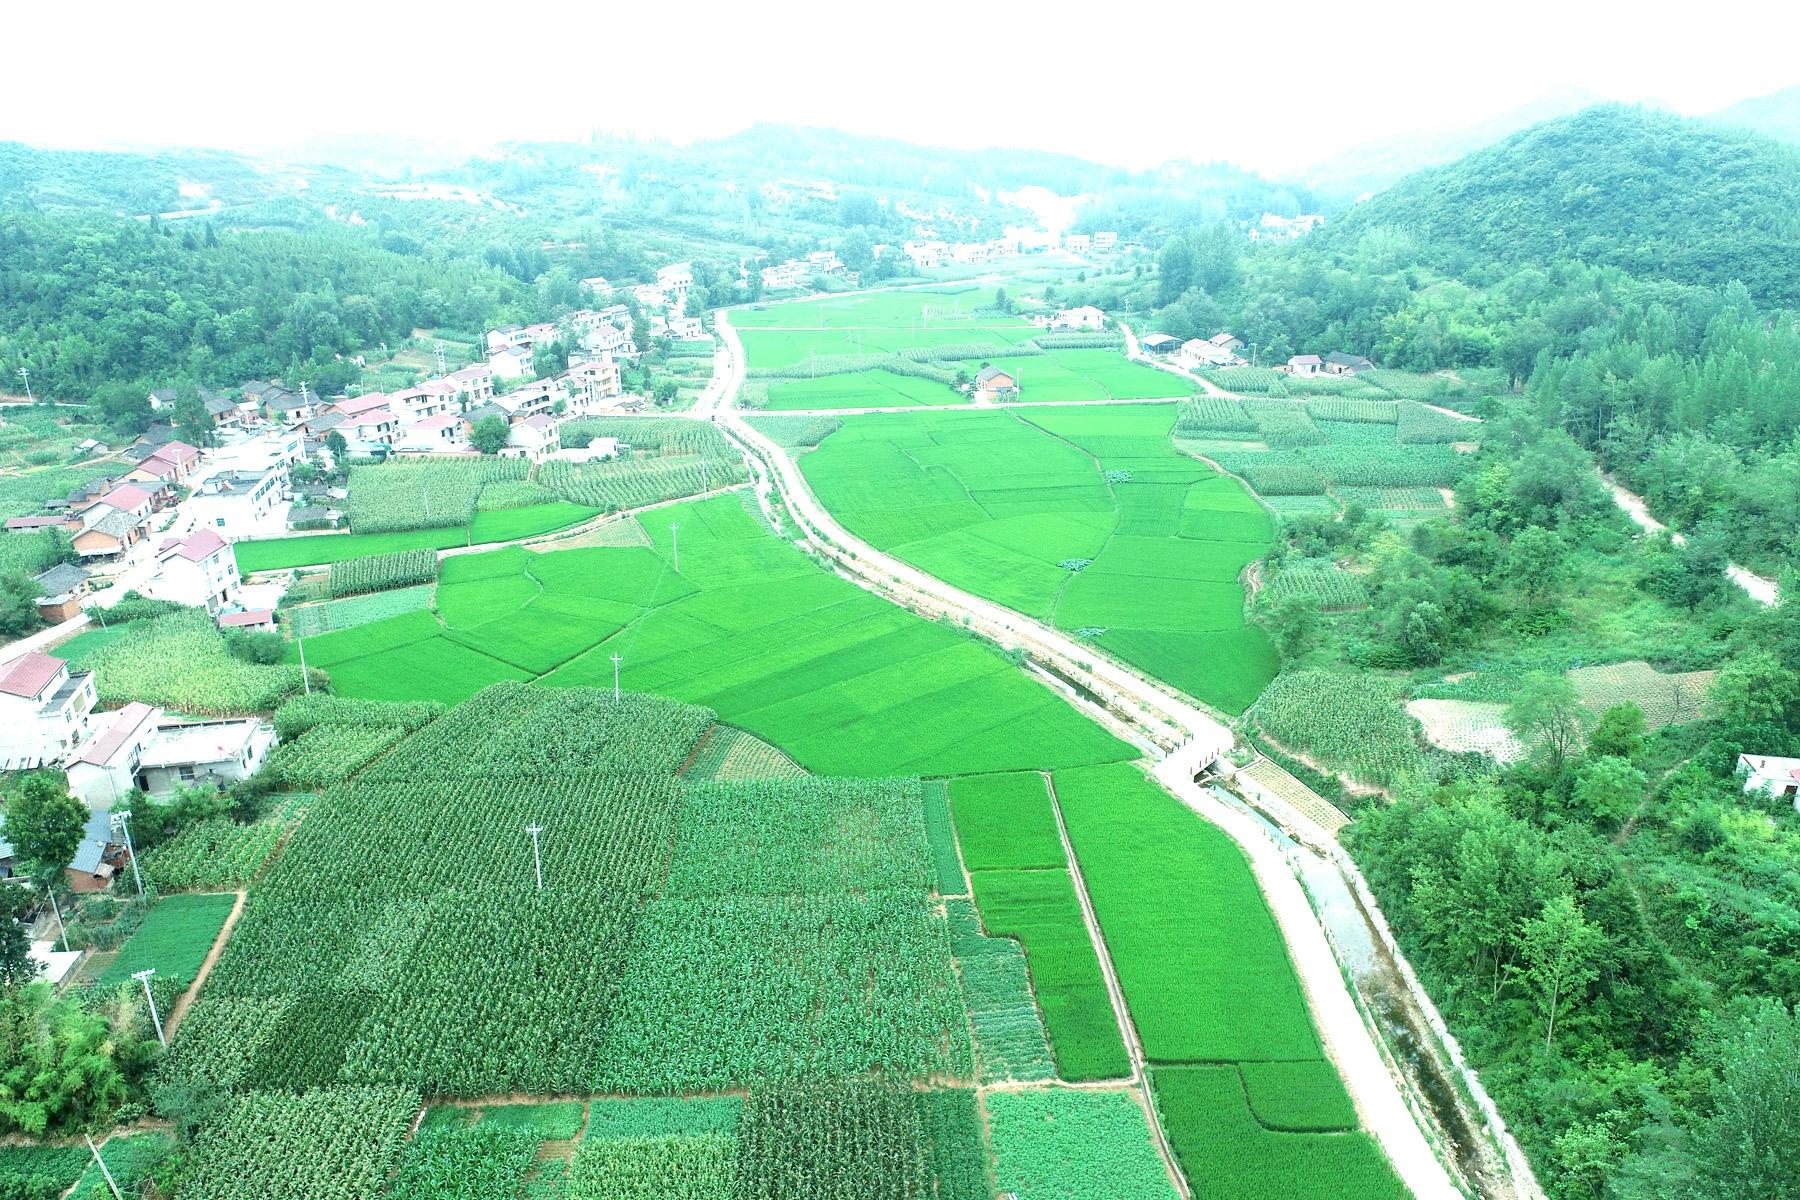 高标准农田与美丽村庄相映成趣。